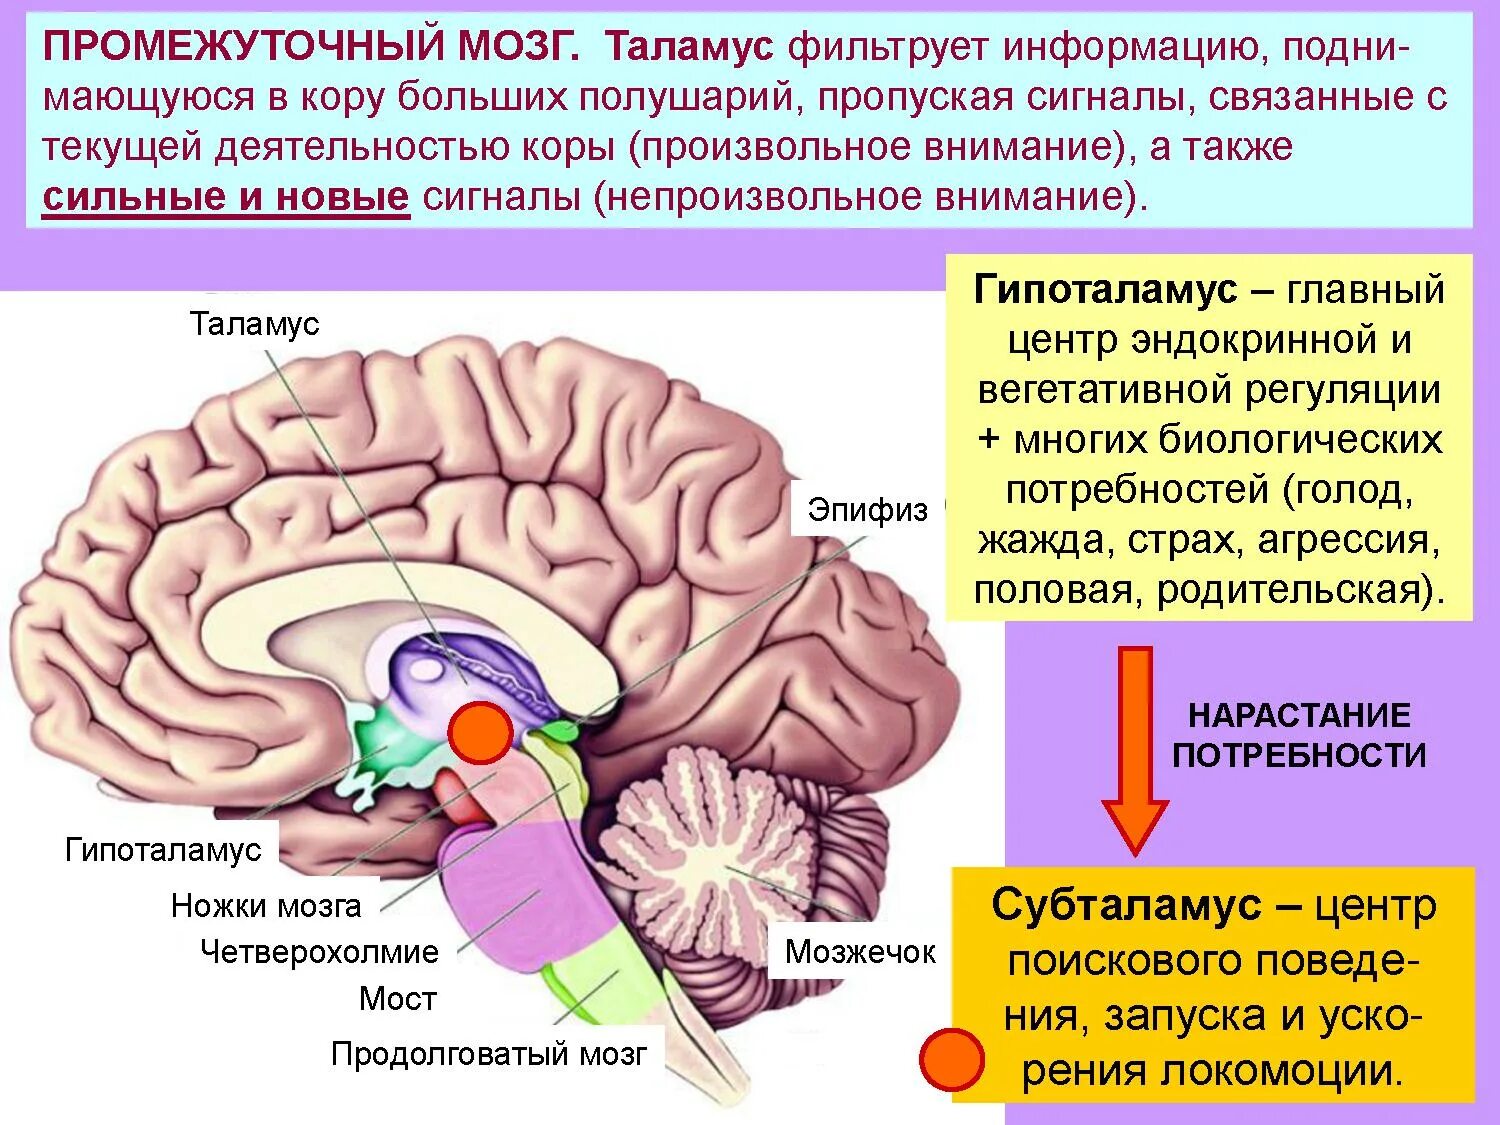 Функция промежуточного мозга дыхание температура тела. Эпиталамус и субталамус. Промежуточный мозг строение. Промежуточный мозг регулирует. Функции промежуточного мозга.